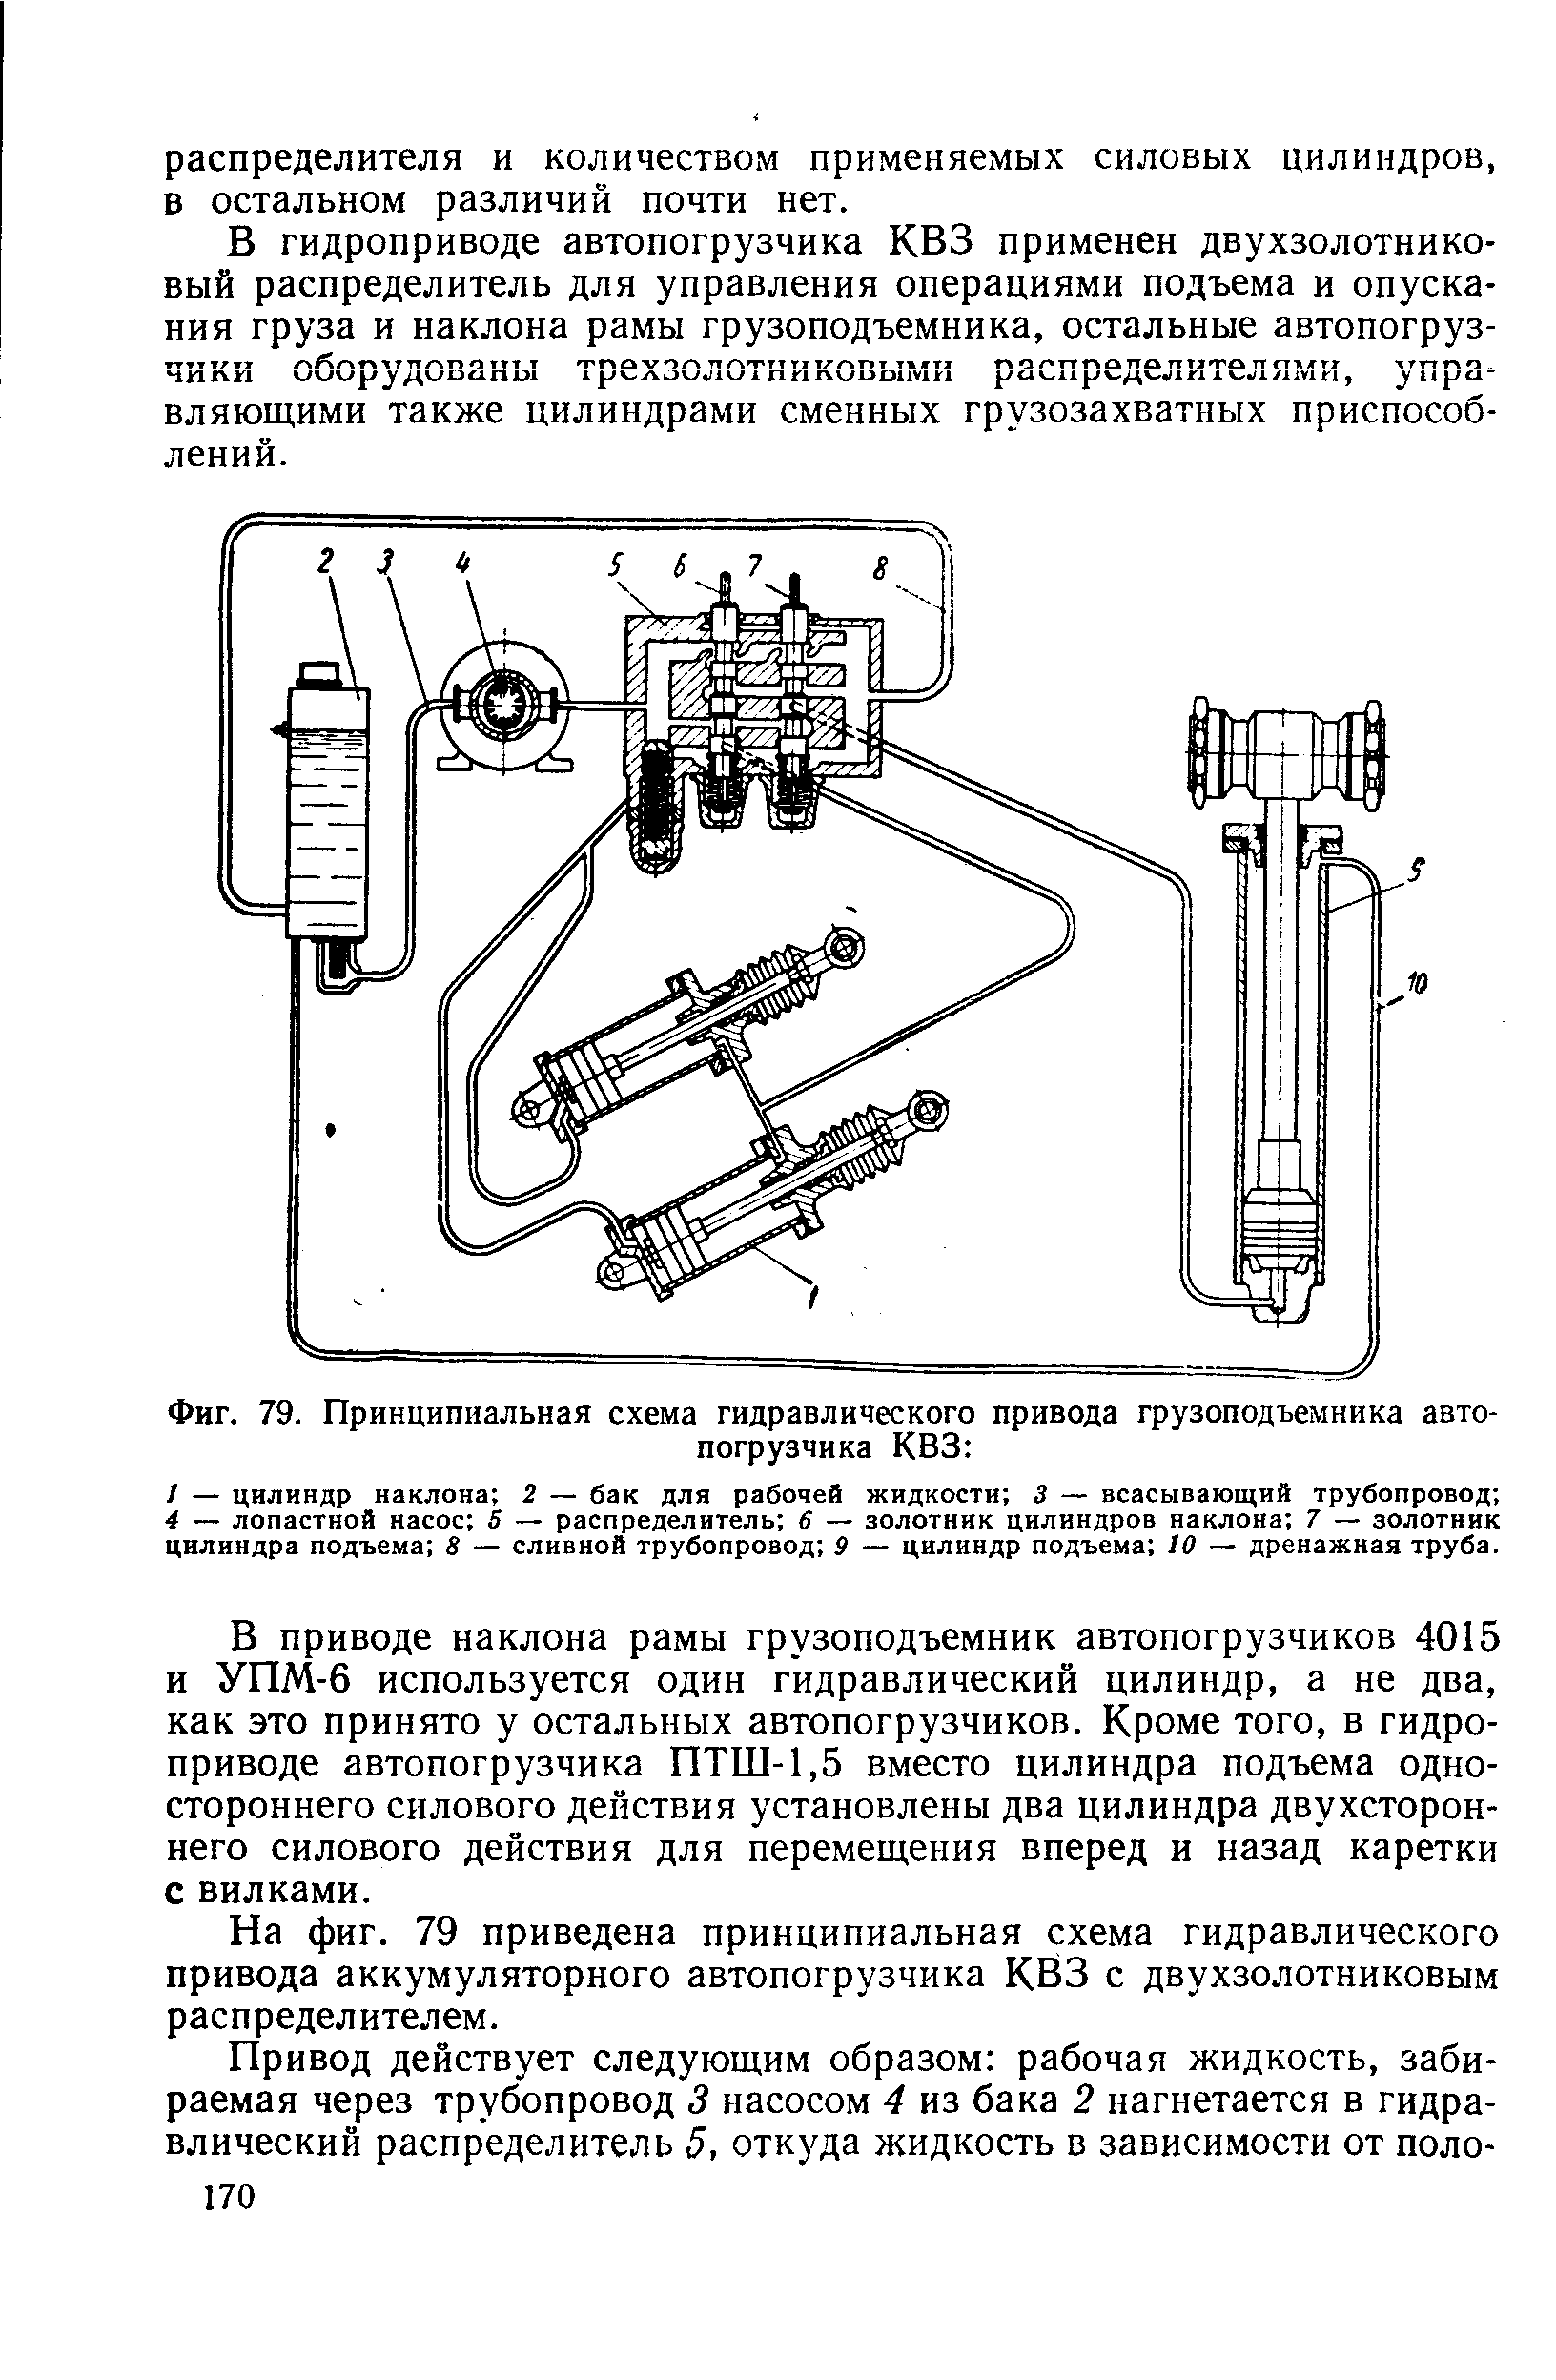 Фиг. 79. Принципиальная схема гидравлического привода грузоподъемника автопогрузчика КВЗ 
